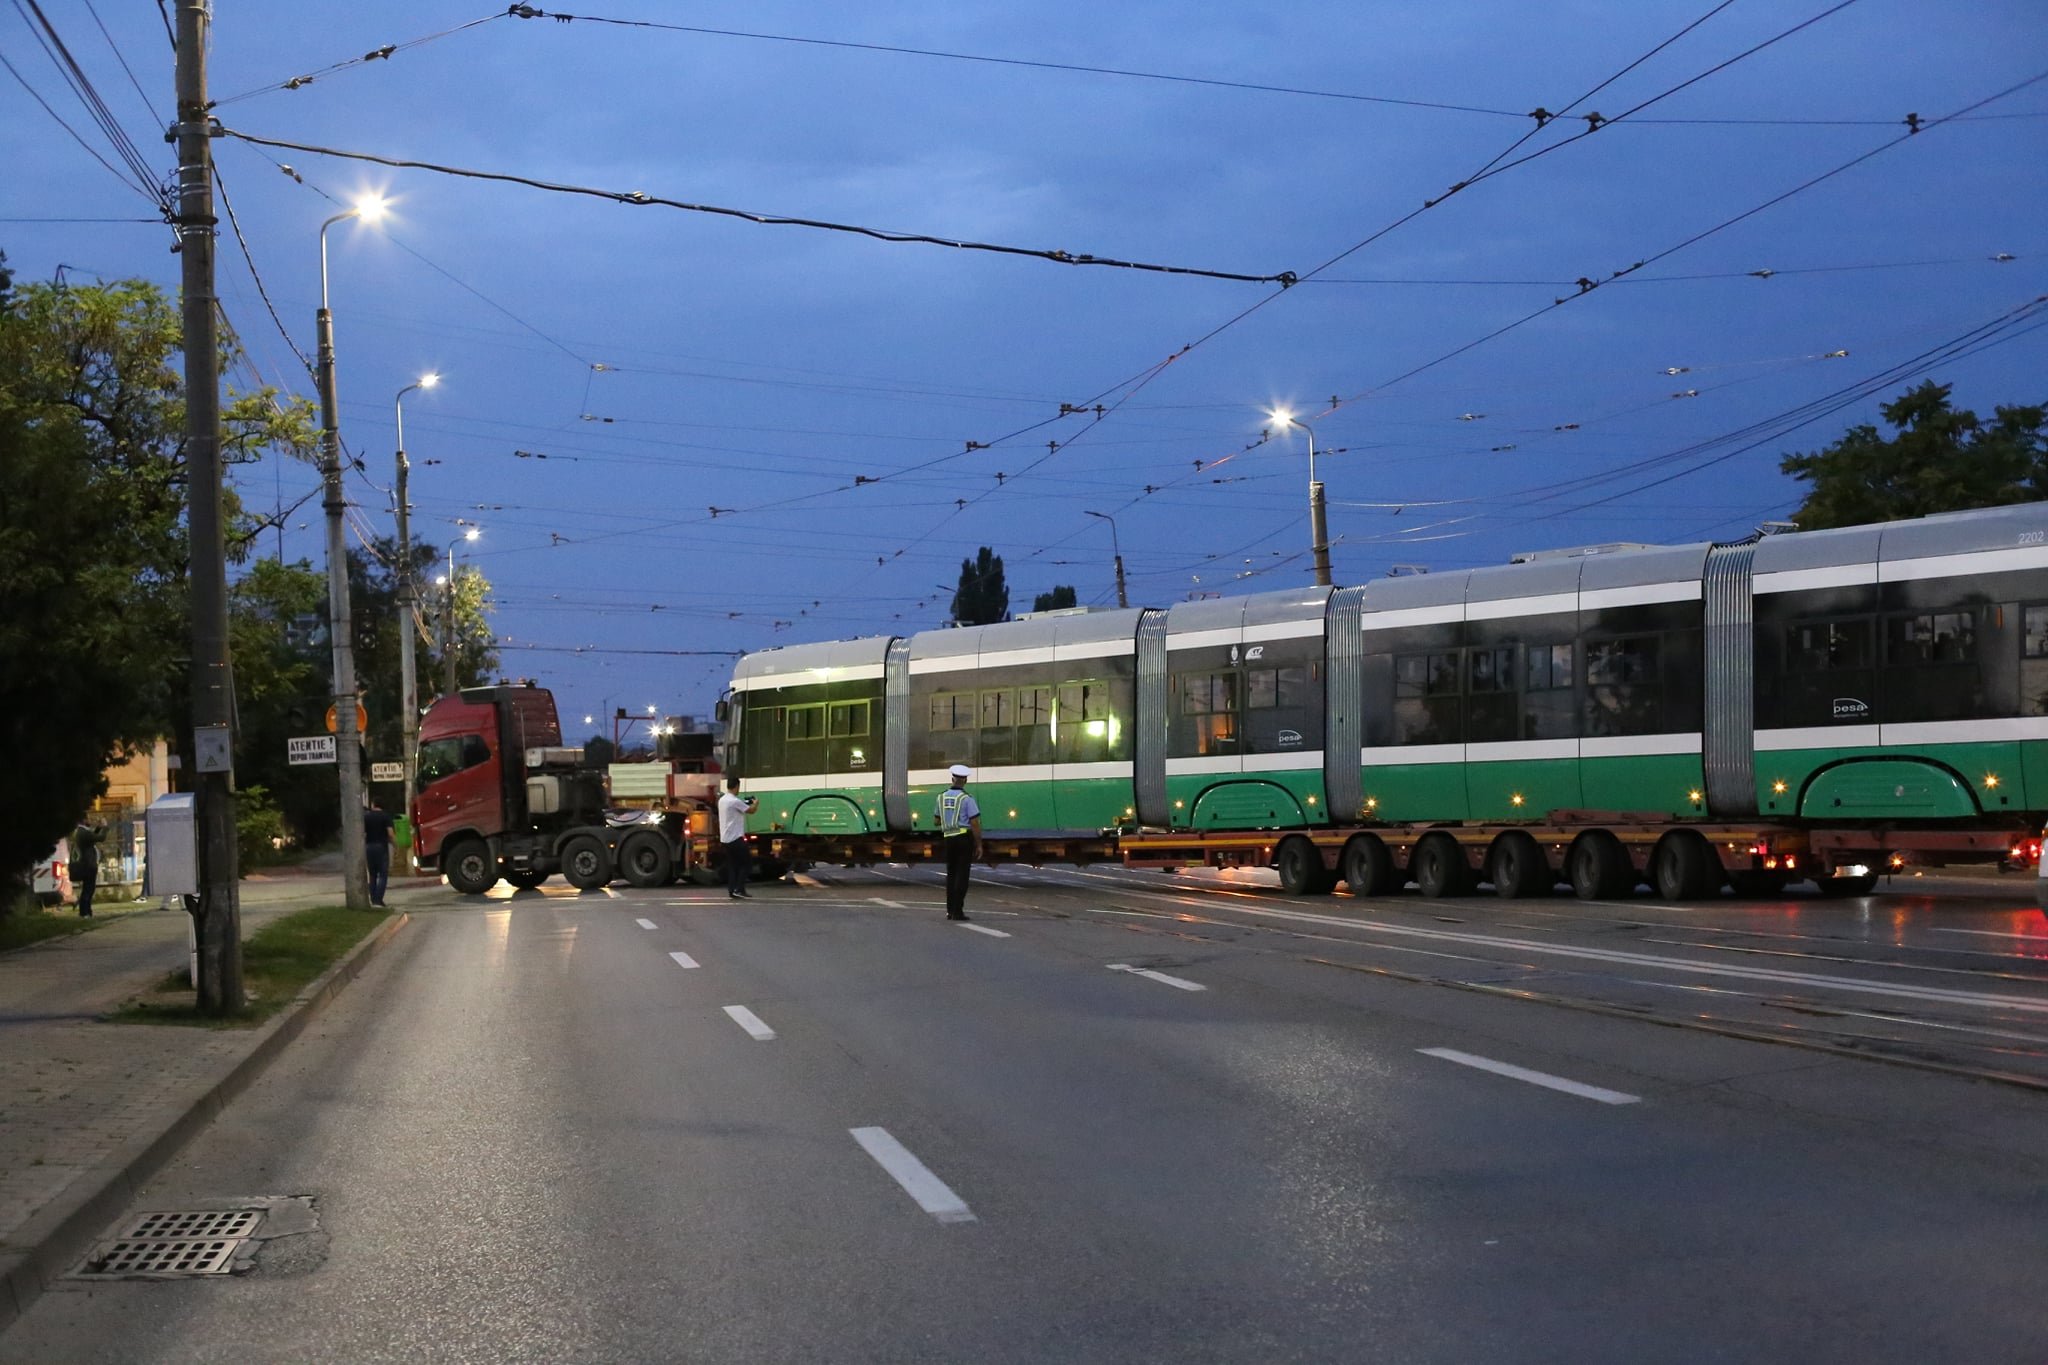  IMAGINI: Când și pe ce rute vor intra în circulaţie noile tramvaie aduse la Iași